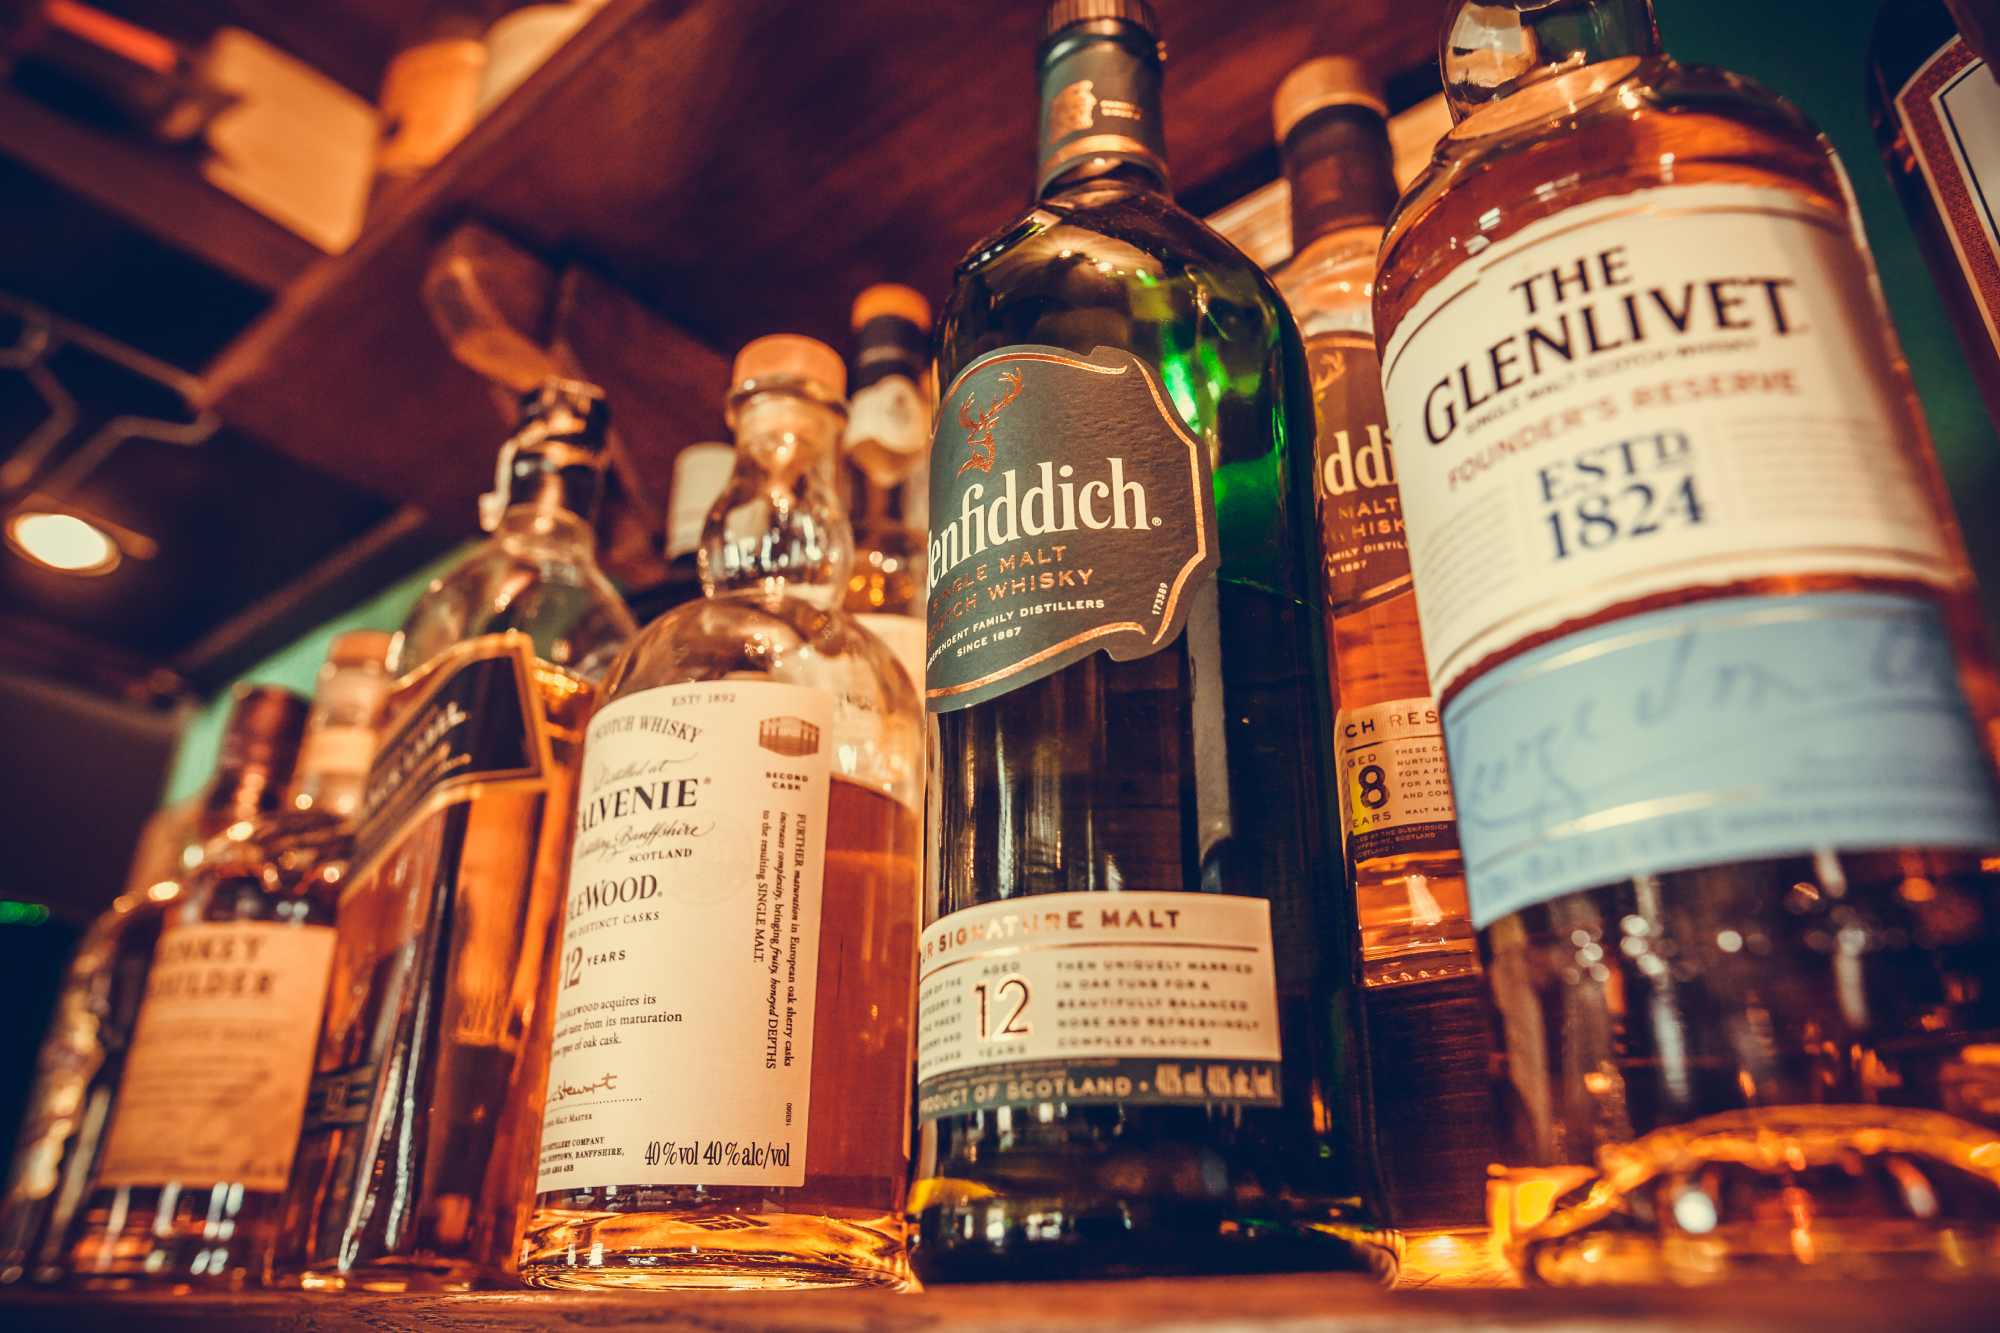 Scotch whisky bottles on a shelf